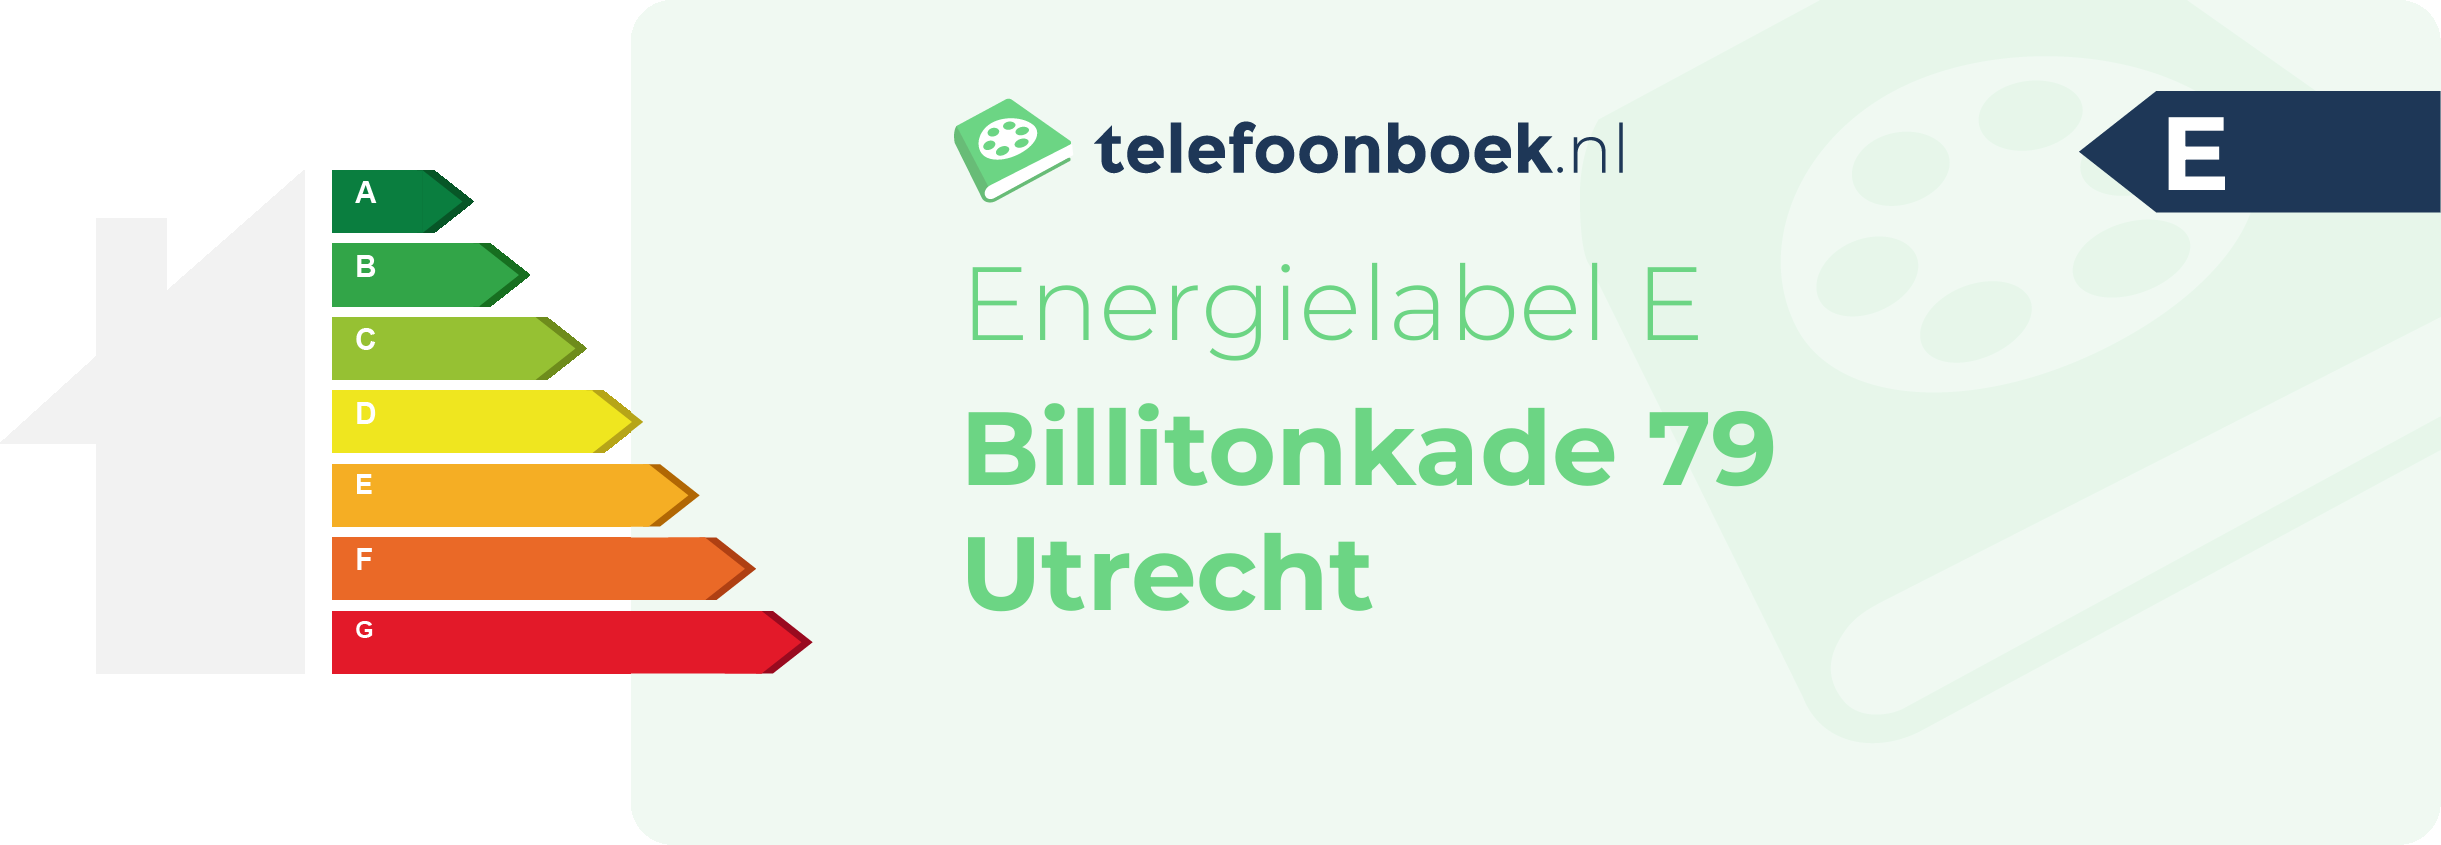 Energielabel Billitonkade 79 Utrecht